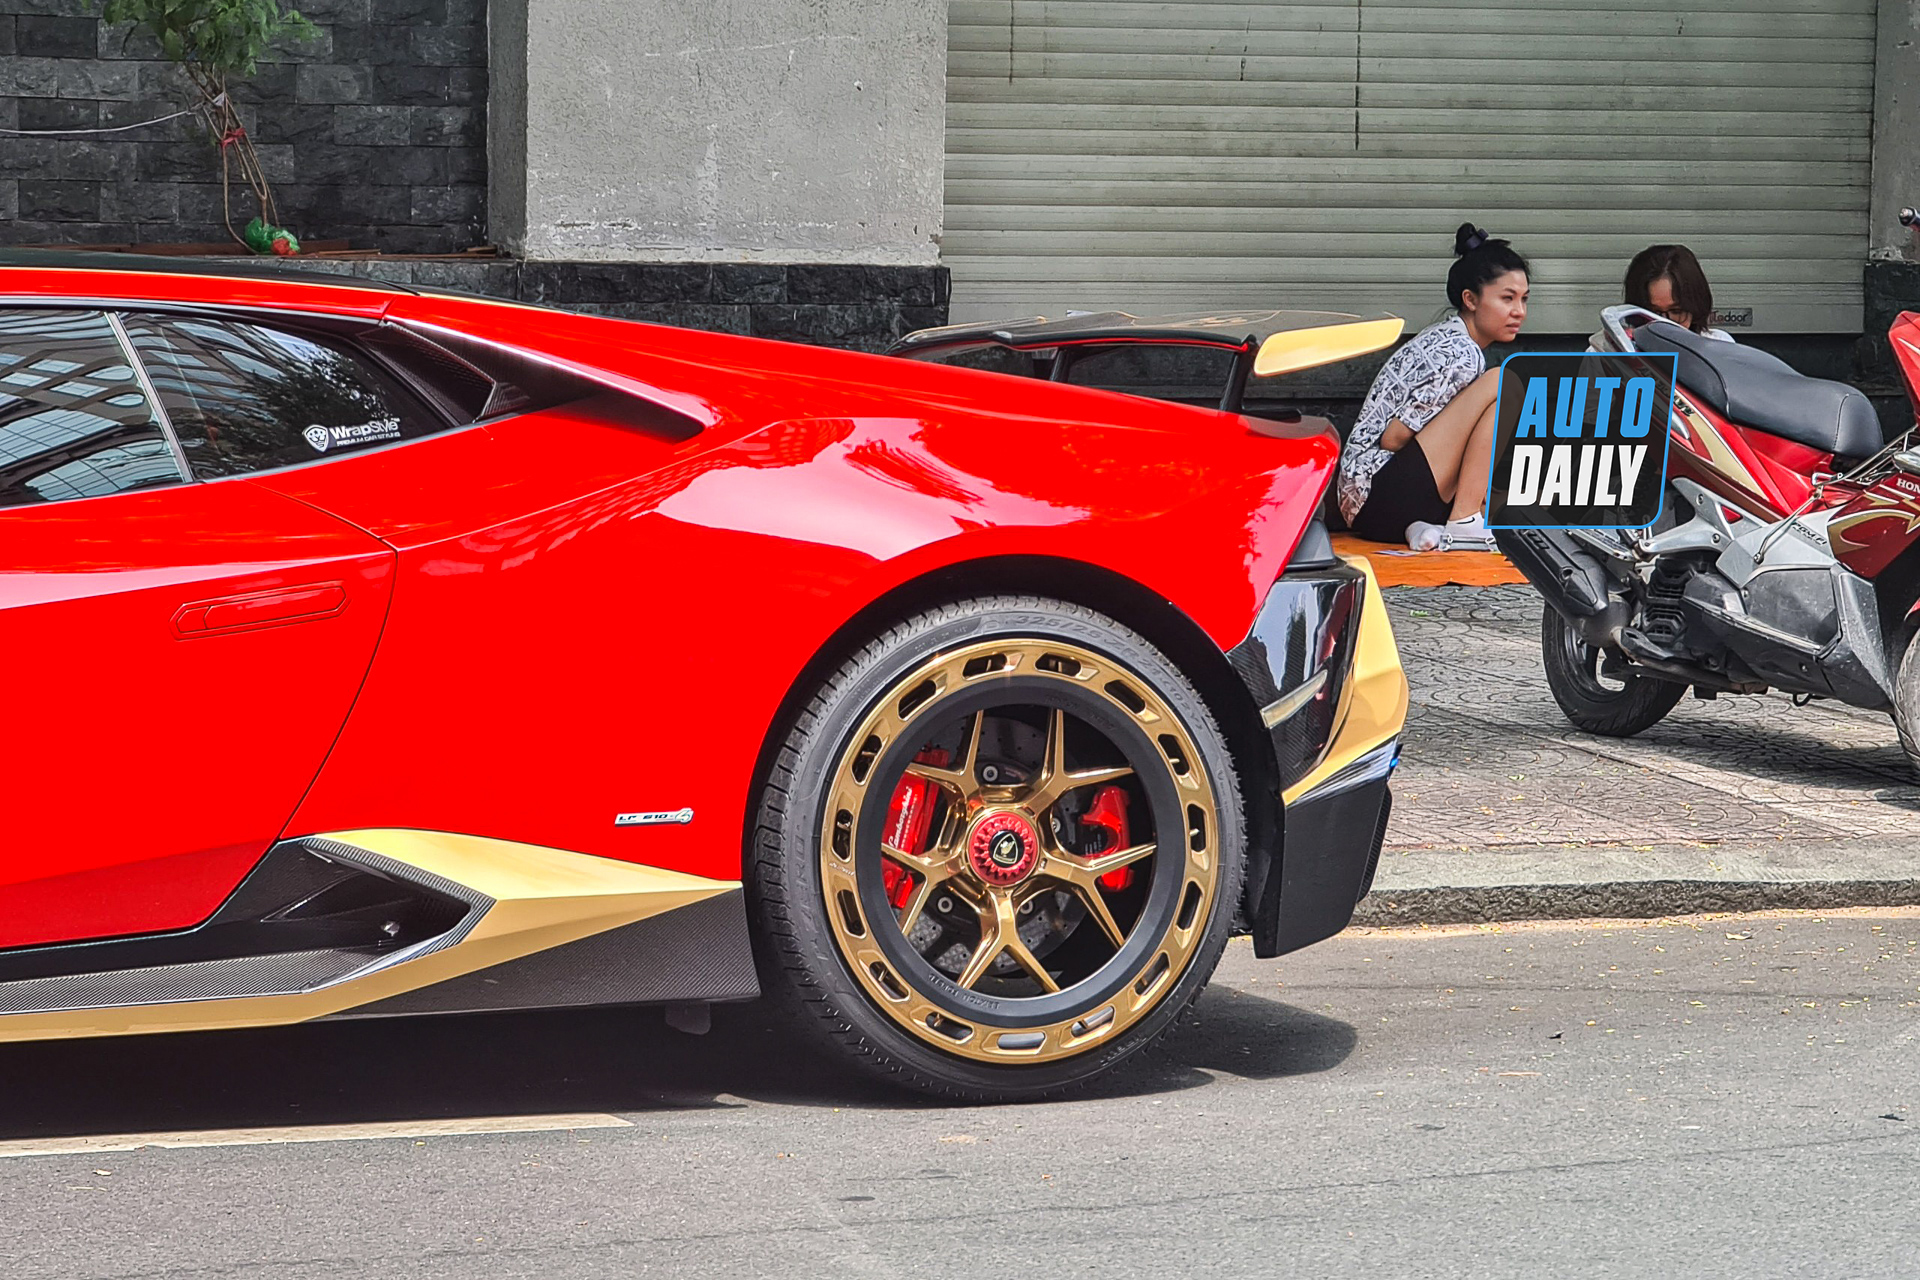 Bắt gặp Lamborghini Huracan độ khủng của đại gia Sài Gòn, bộ mâm hàng thửa giá hàng trăm triệu lamborghini-huracan-do-bo-mam-tram-trieu-autodaily-10.JPG